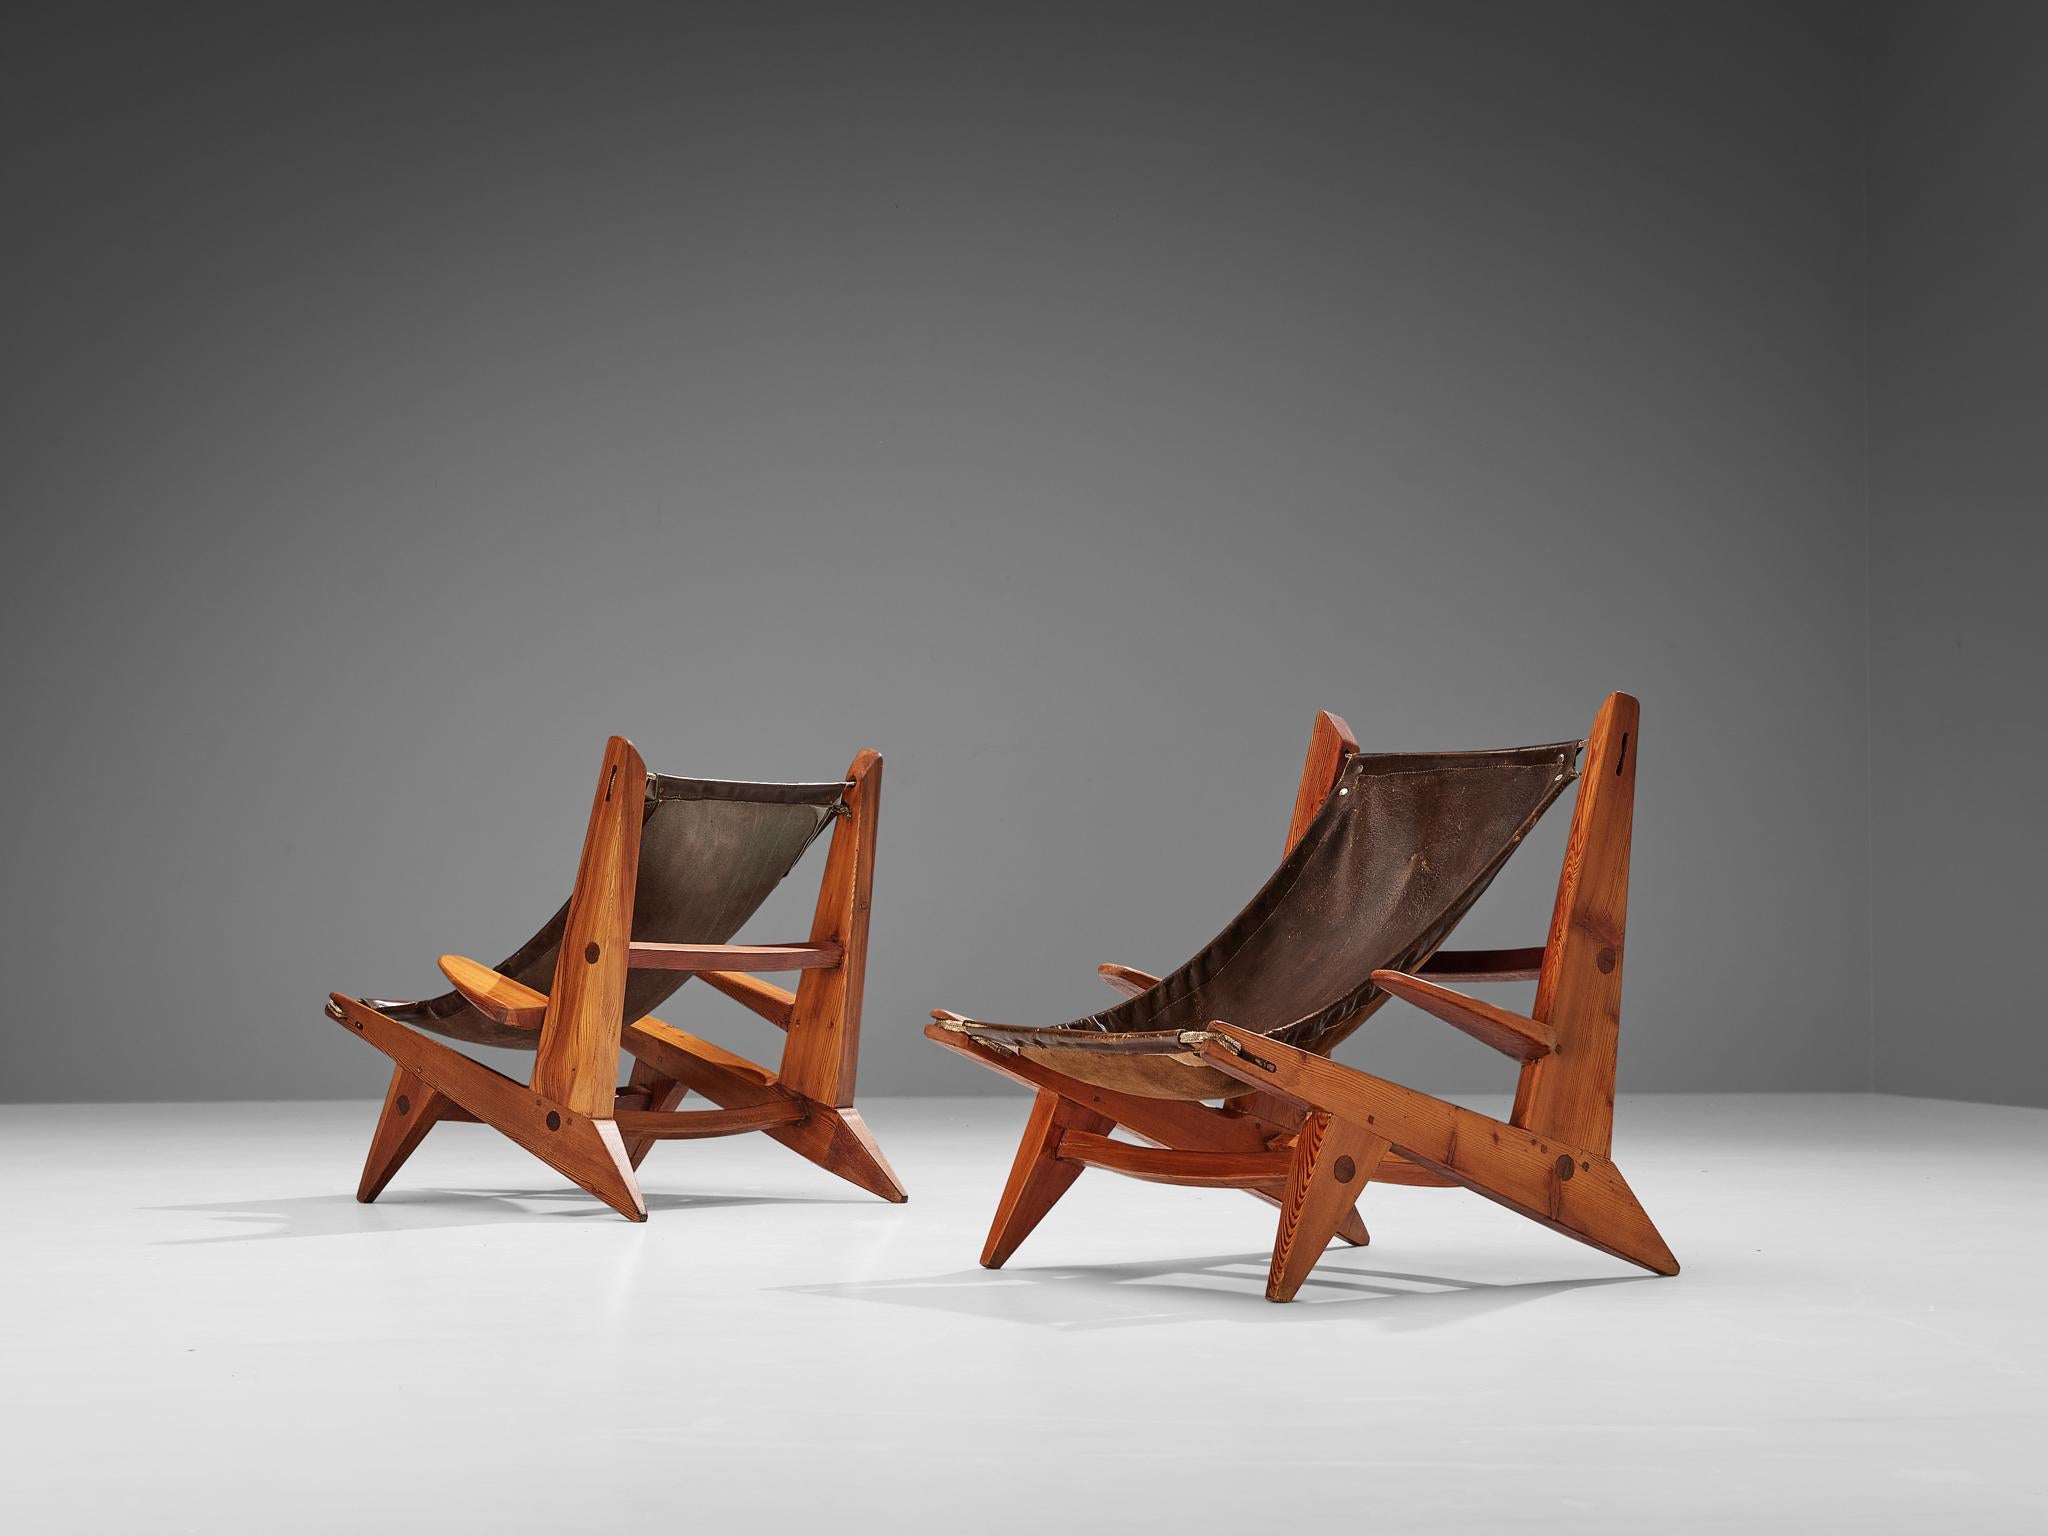 Paire de chaises de chasse, cuir, pin, France, années 1950

Cette paire de chaises de chasse présente un magnifique cuir patiné sur l'assise et le dossier. Les chaises sont construites de manière sculpturale avec une touche massive. Le bois de pin